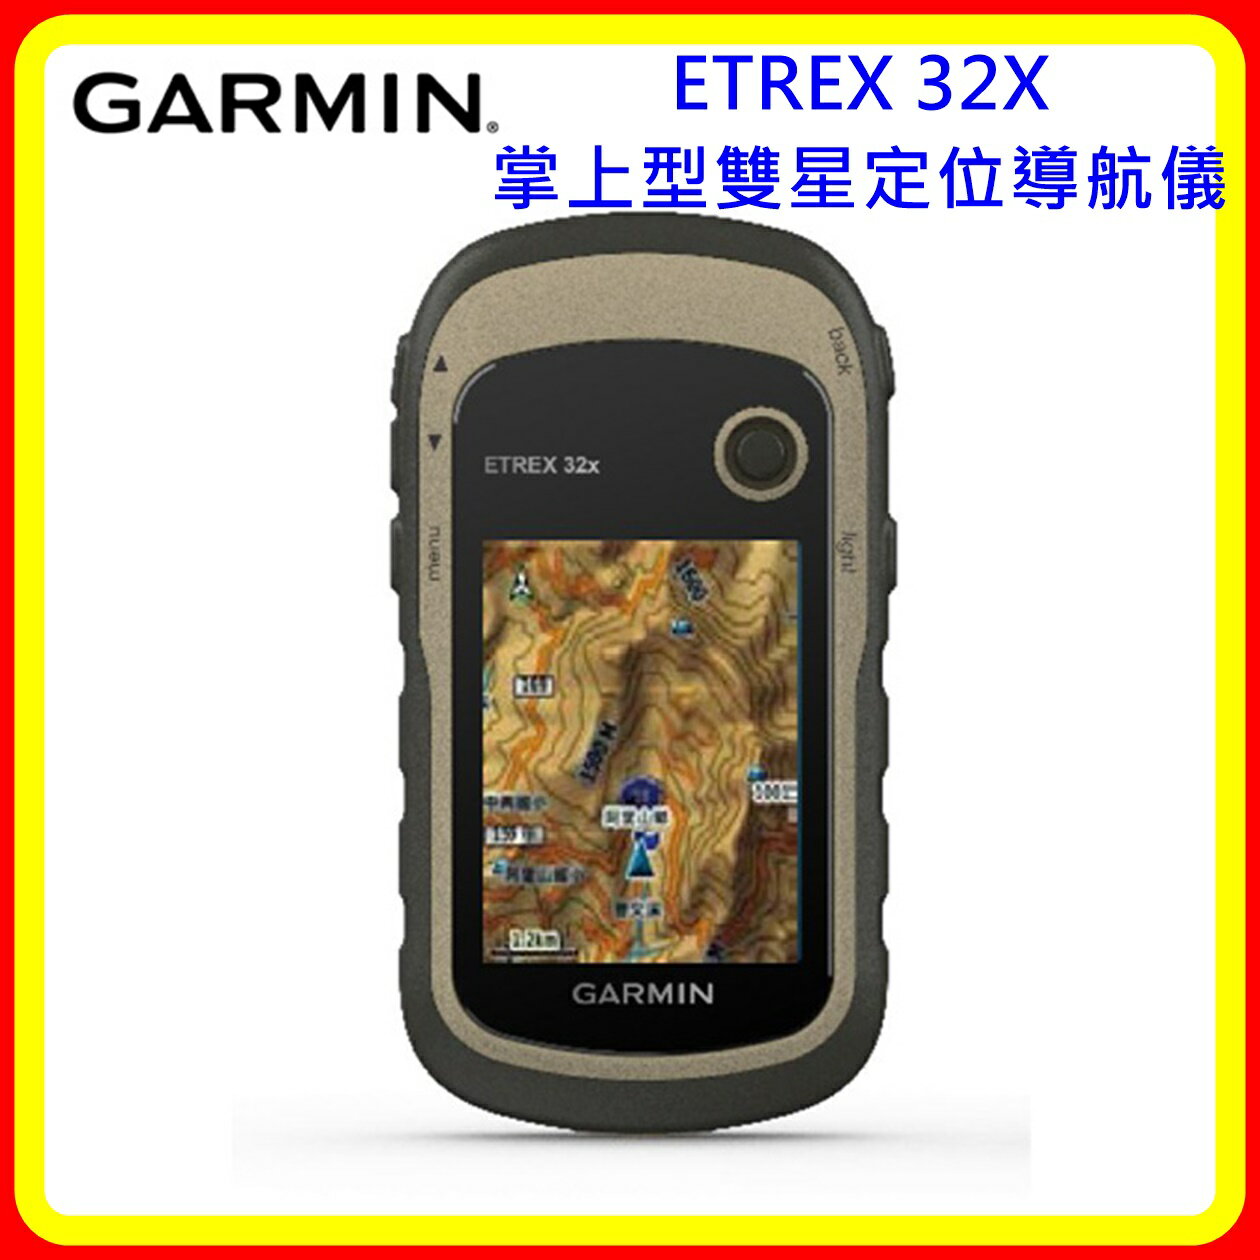 【現貨 含稅】Garmin ETREX 32X 掌上型雙星定位導航儀 台灣公司貨